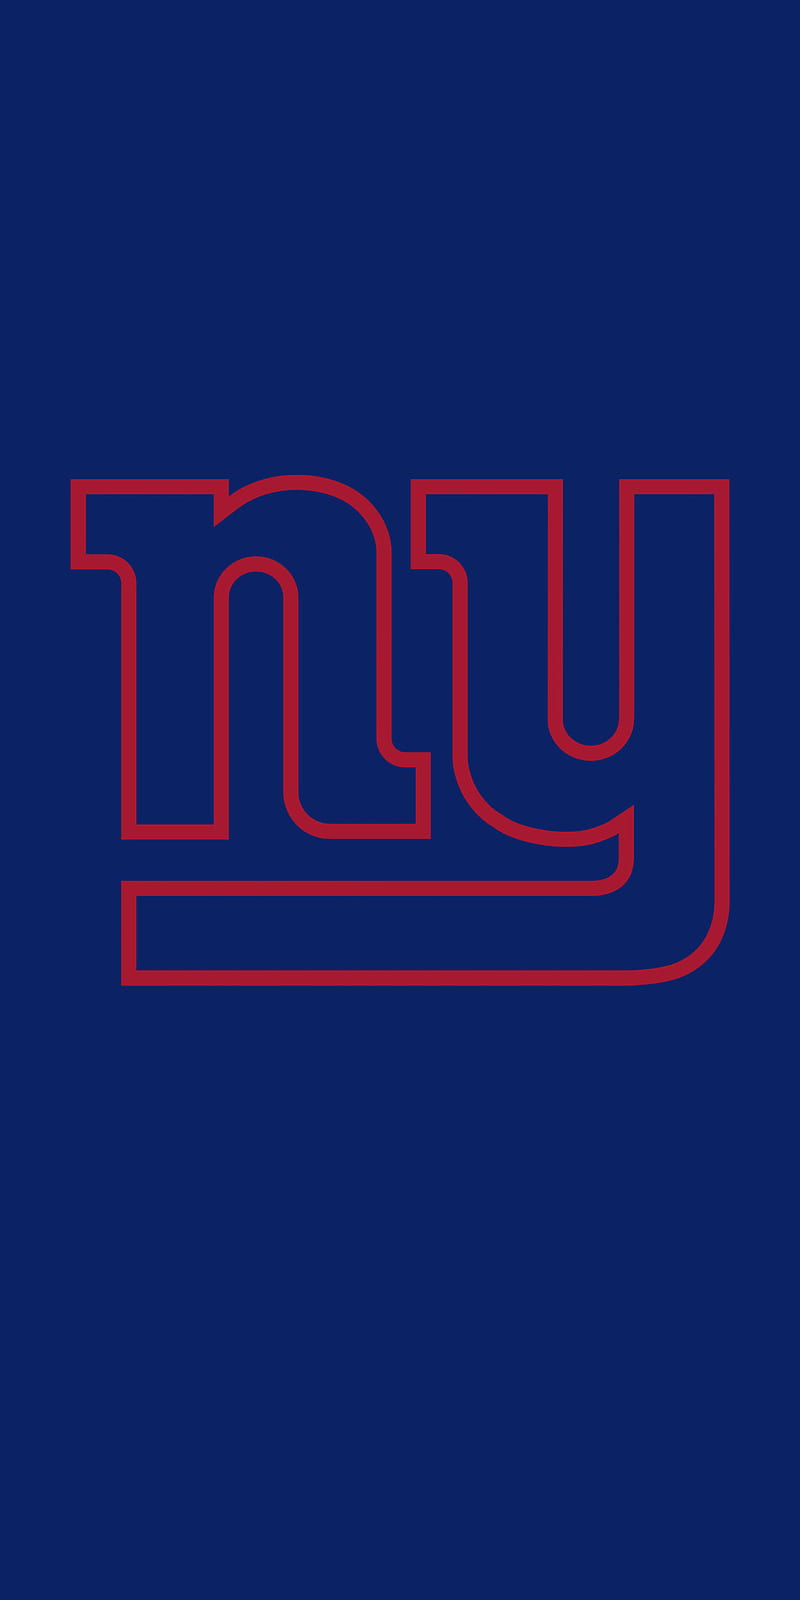 New York Giants Wallpapers - Top 25 Best New York Giants Wallpapers Download